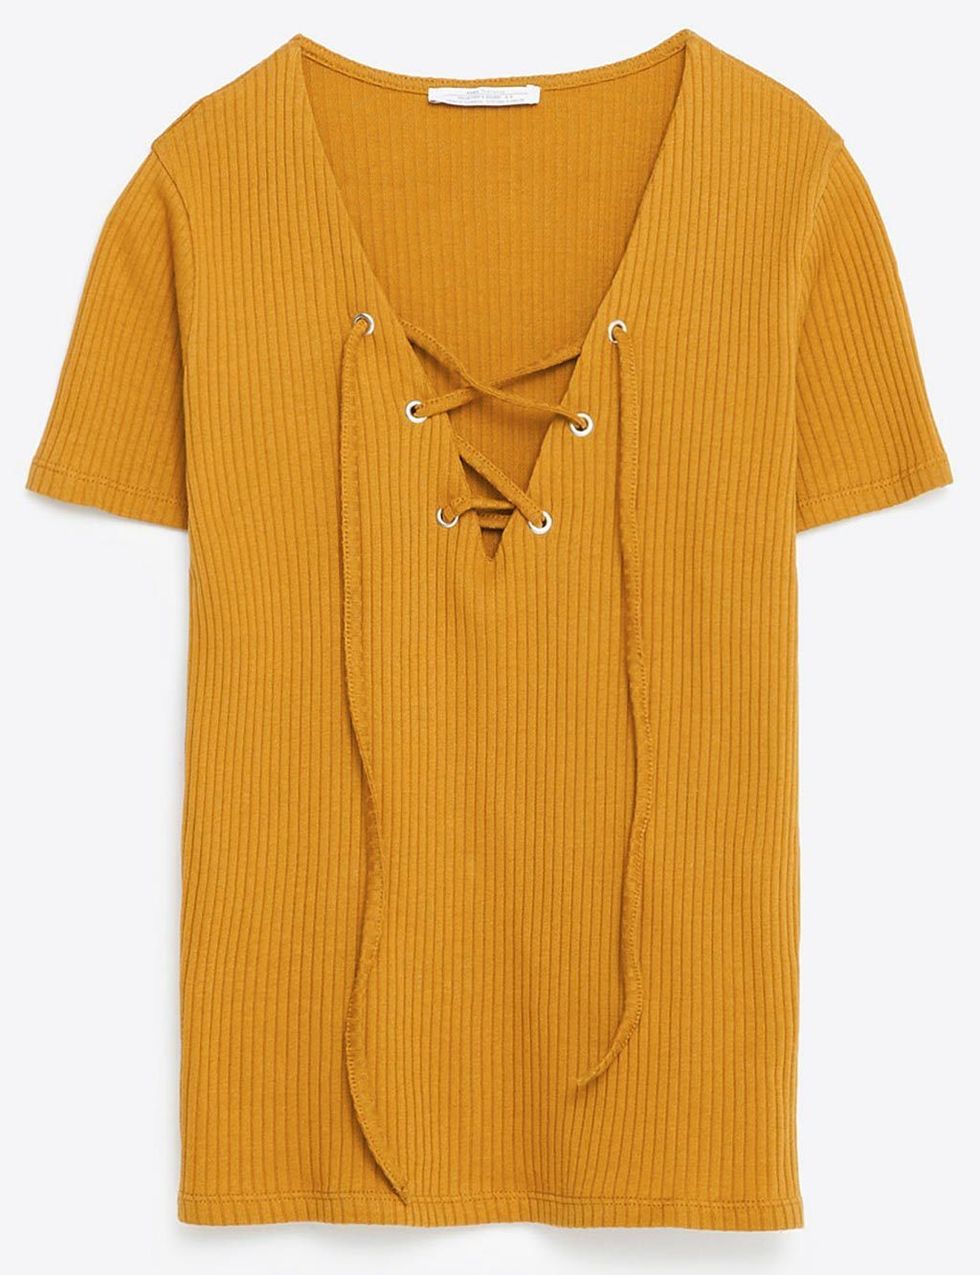 <p>Camiseta con cintas en el escote (12,95 €) de Zara.</p>